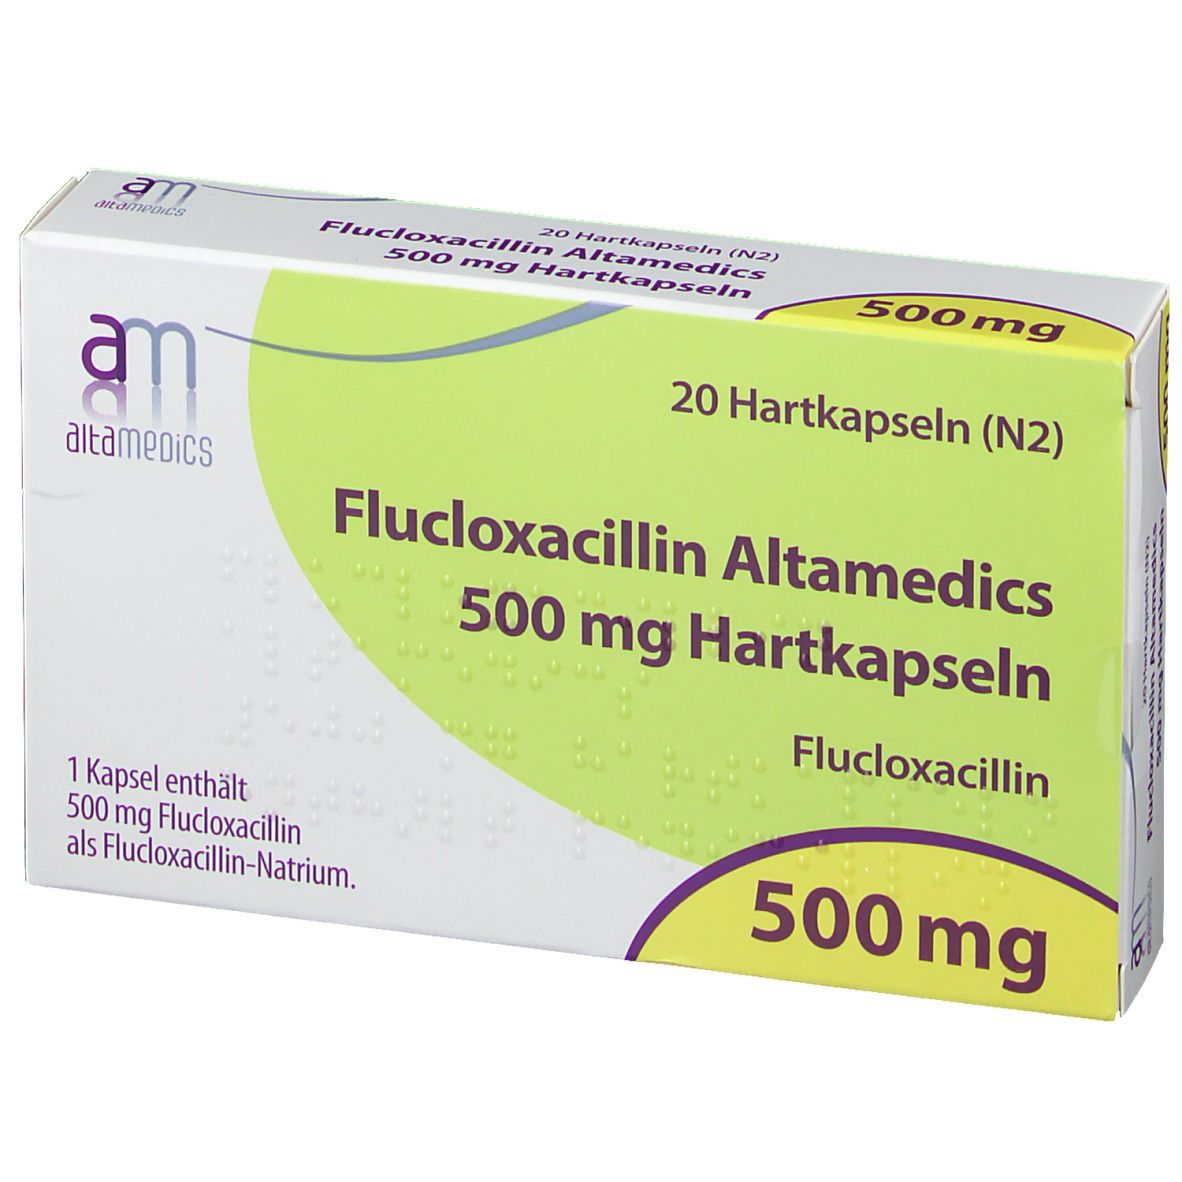 Flucloxacillin Altamedics 500 mg